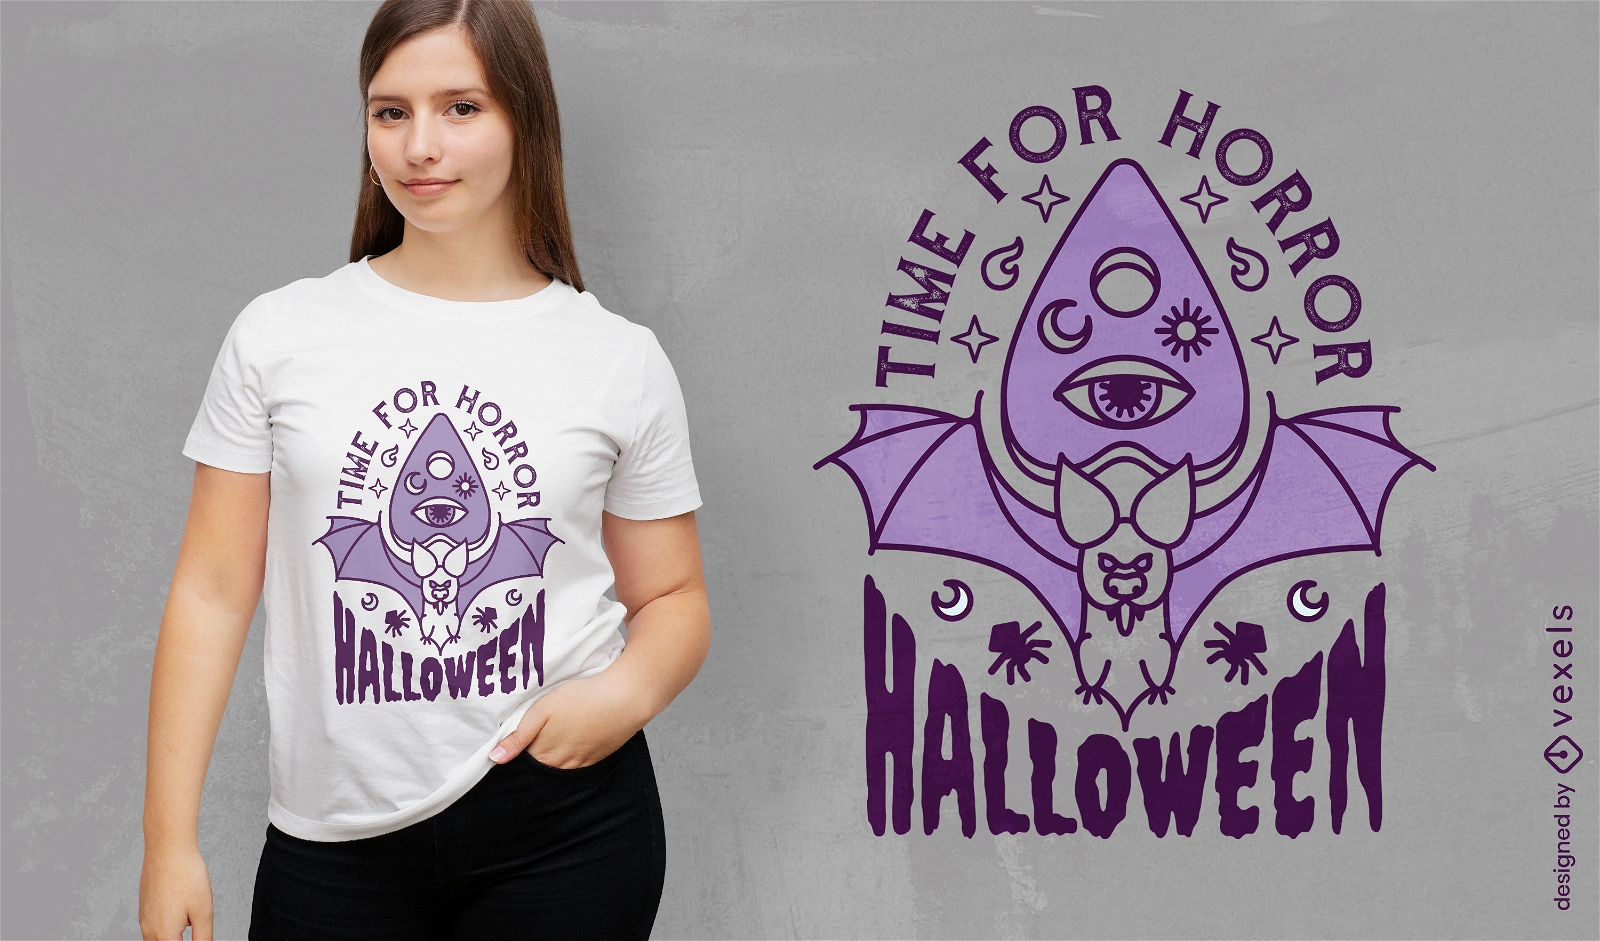 Zeit f?r Horror-Halloween-Fledermaus-T-Shirt-Design